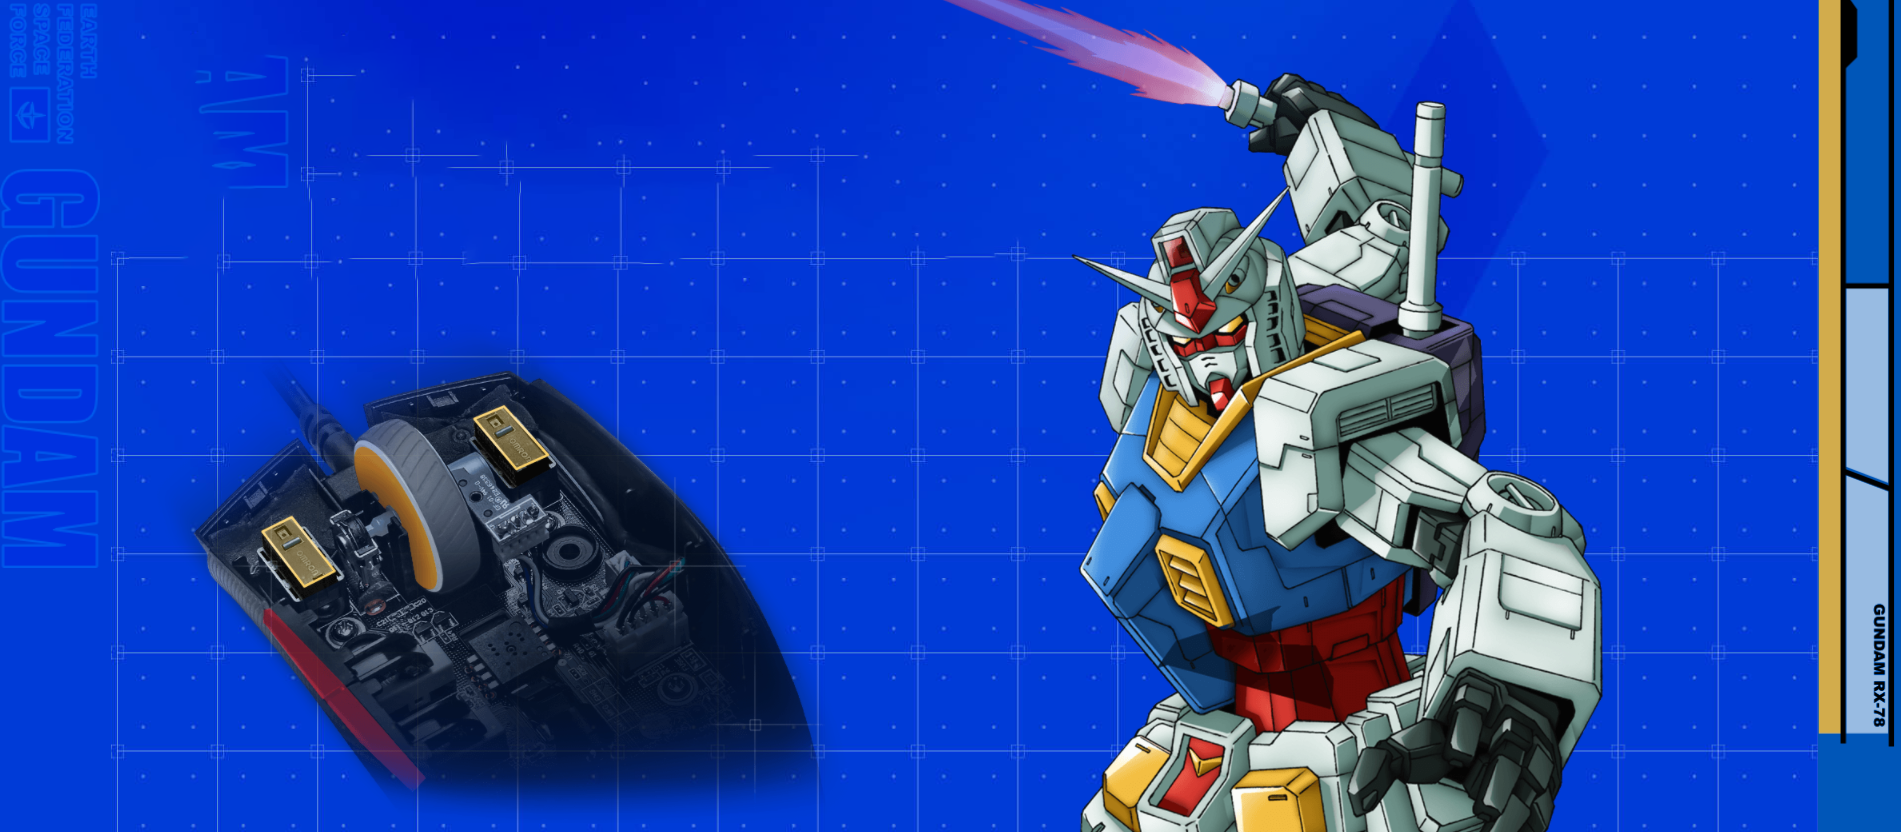 Chuột Asus ROG Strix Impact II Gundam (USB/RGB) có tính năng thay switch nóng độc quyền